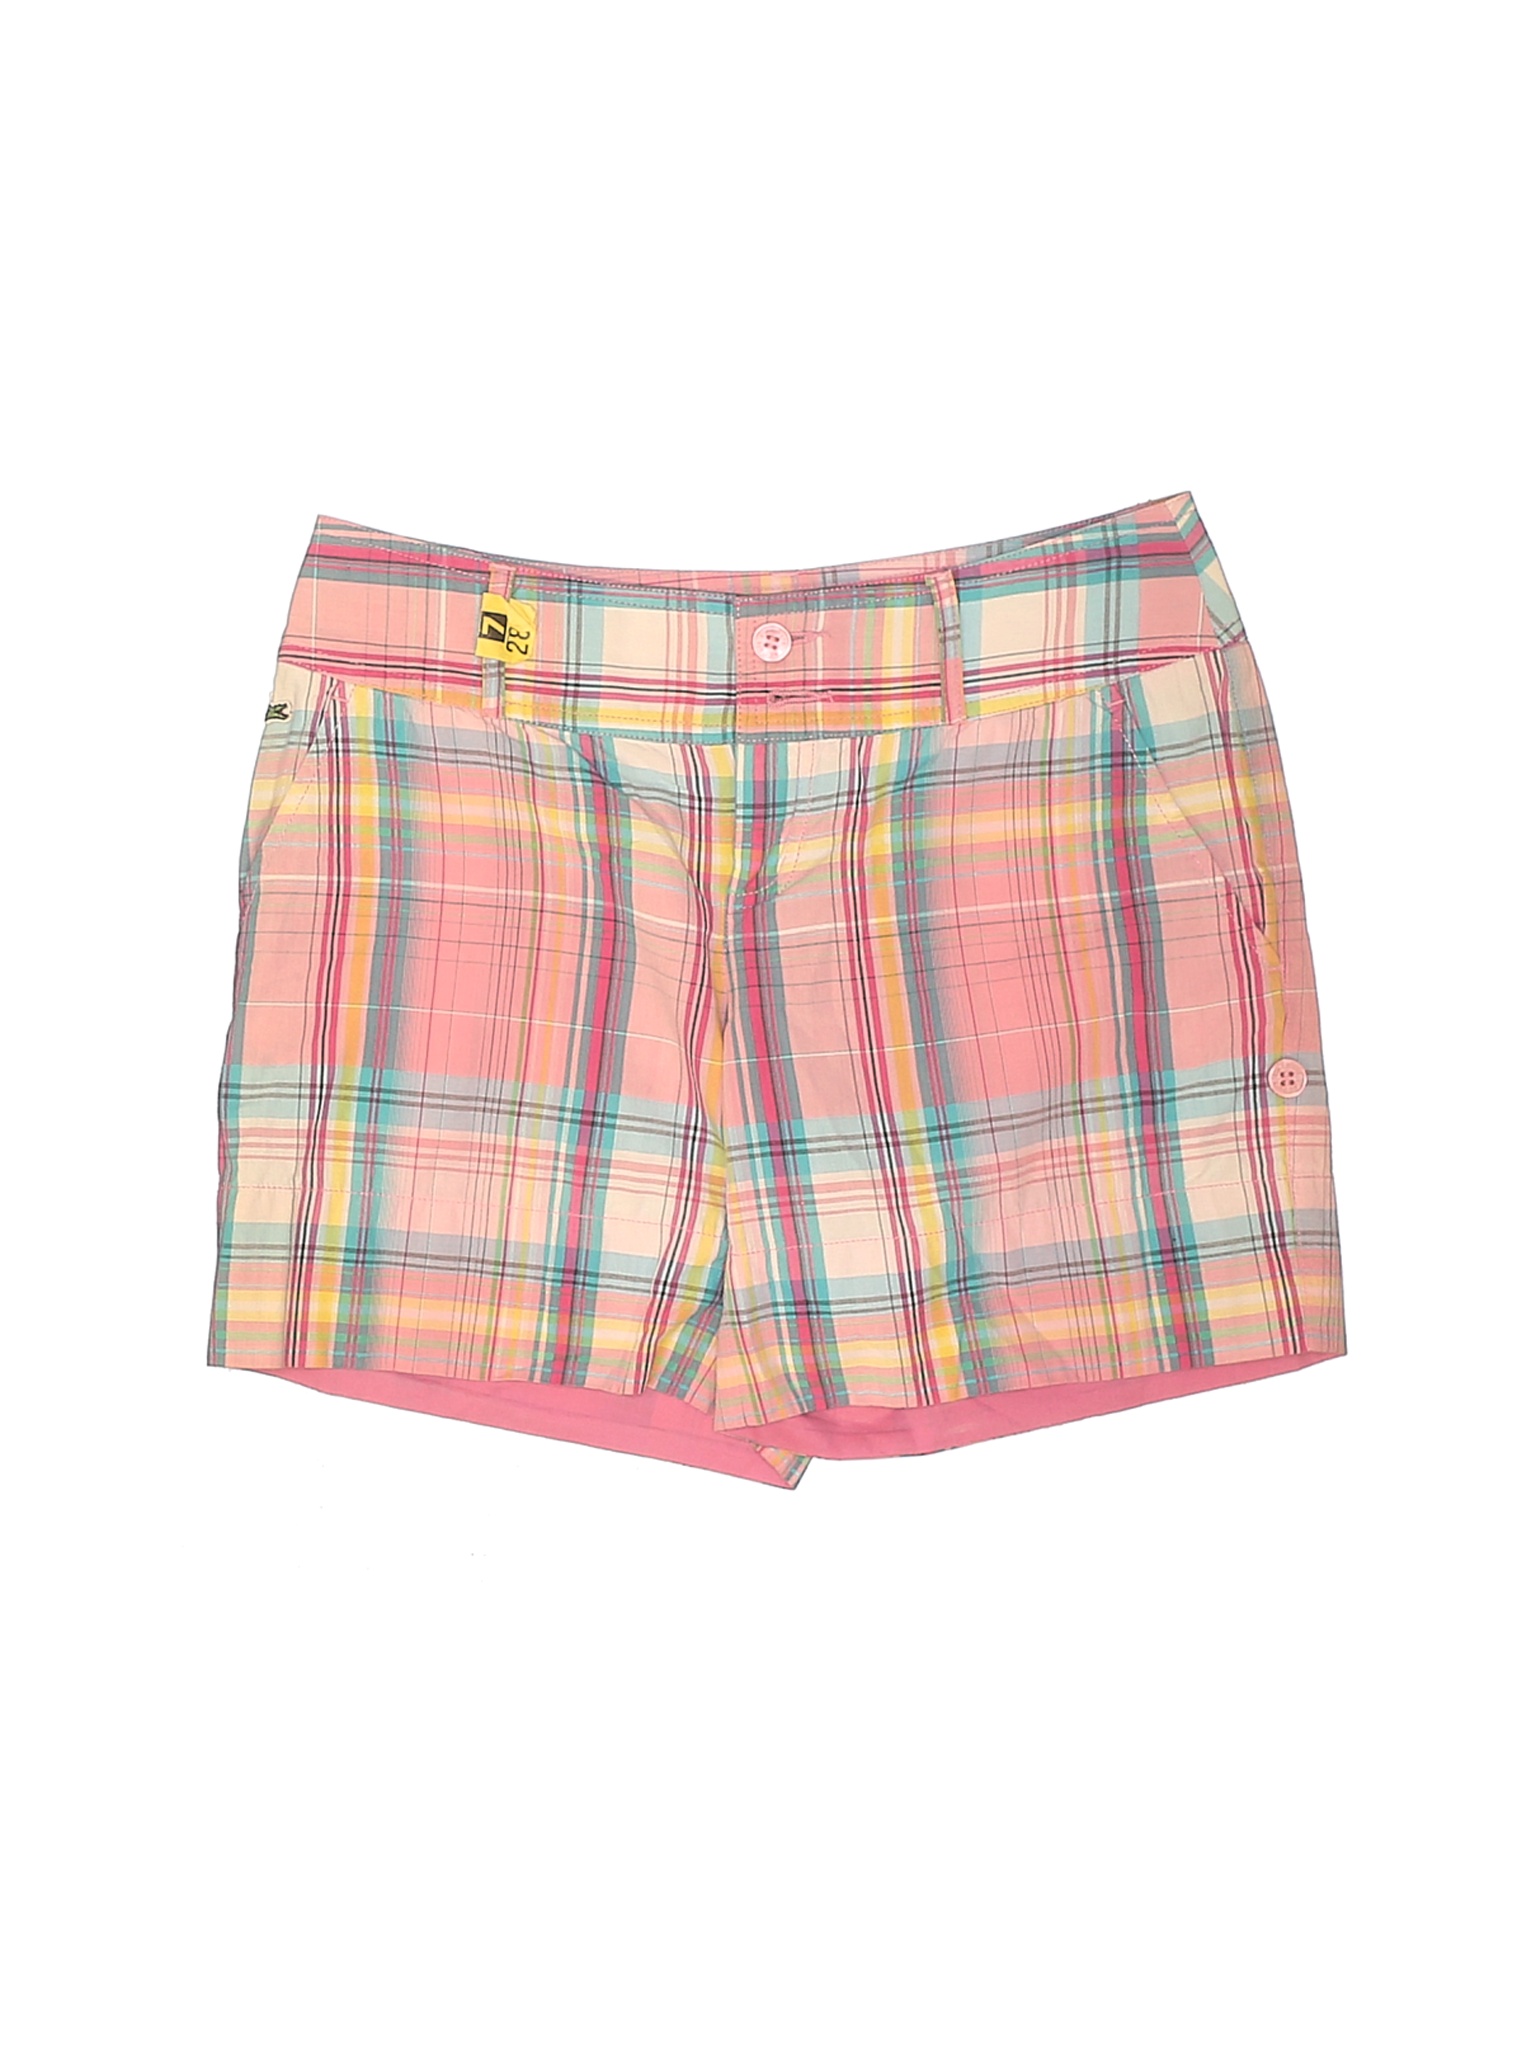 Lacoste Women Pink Shorts 34 eur | eBay